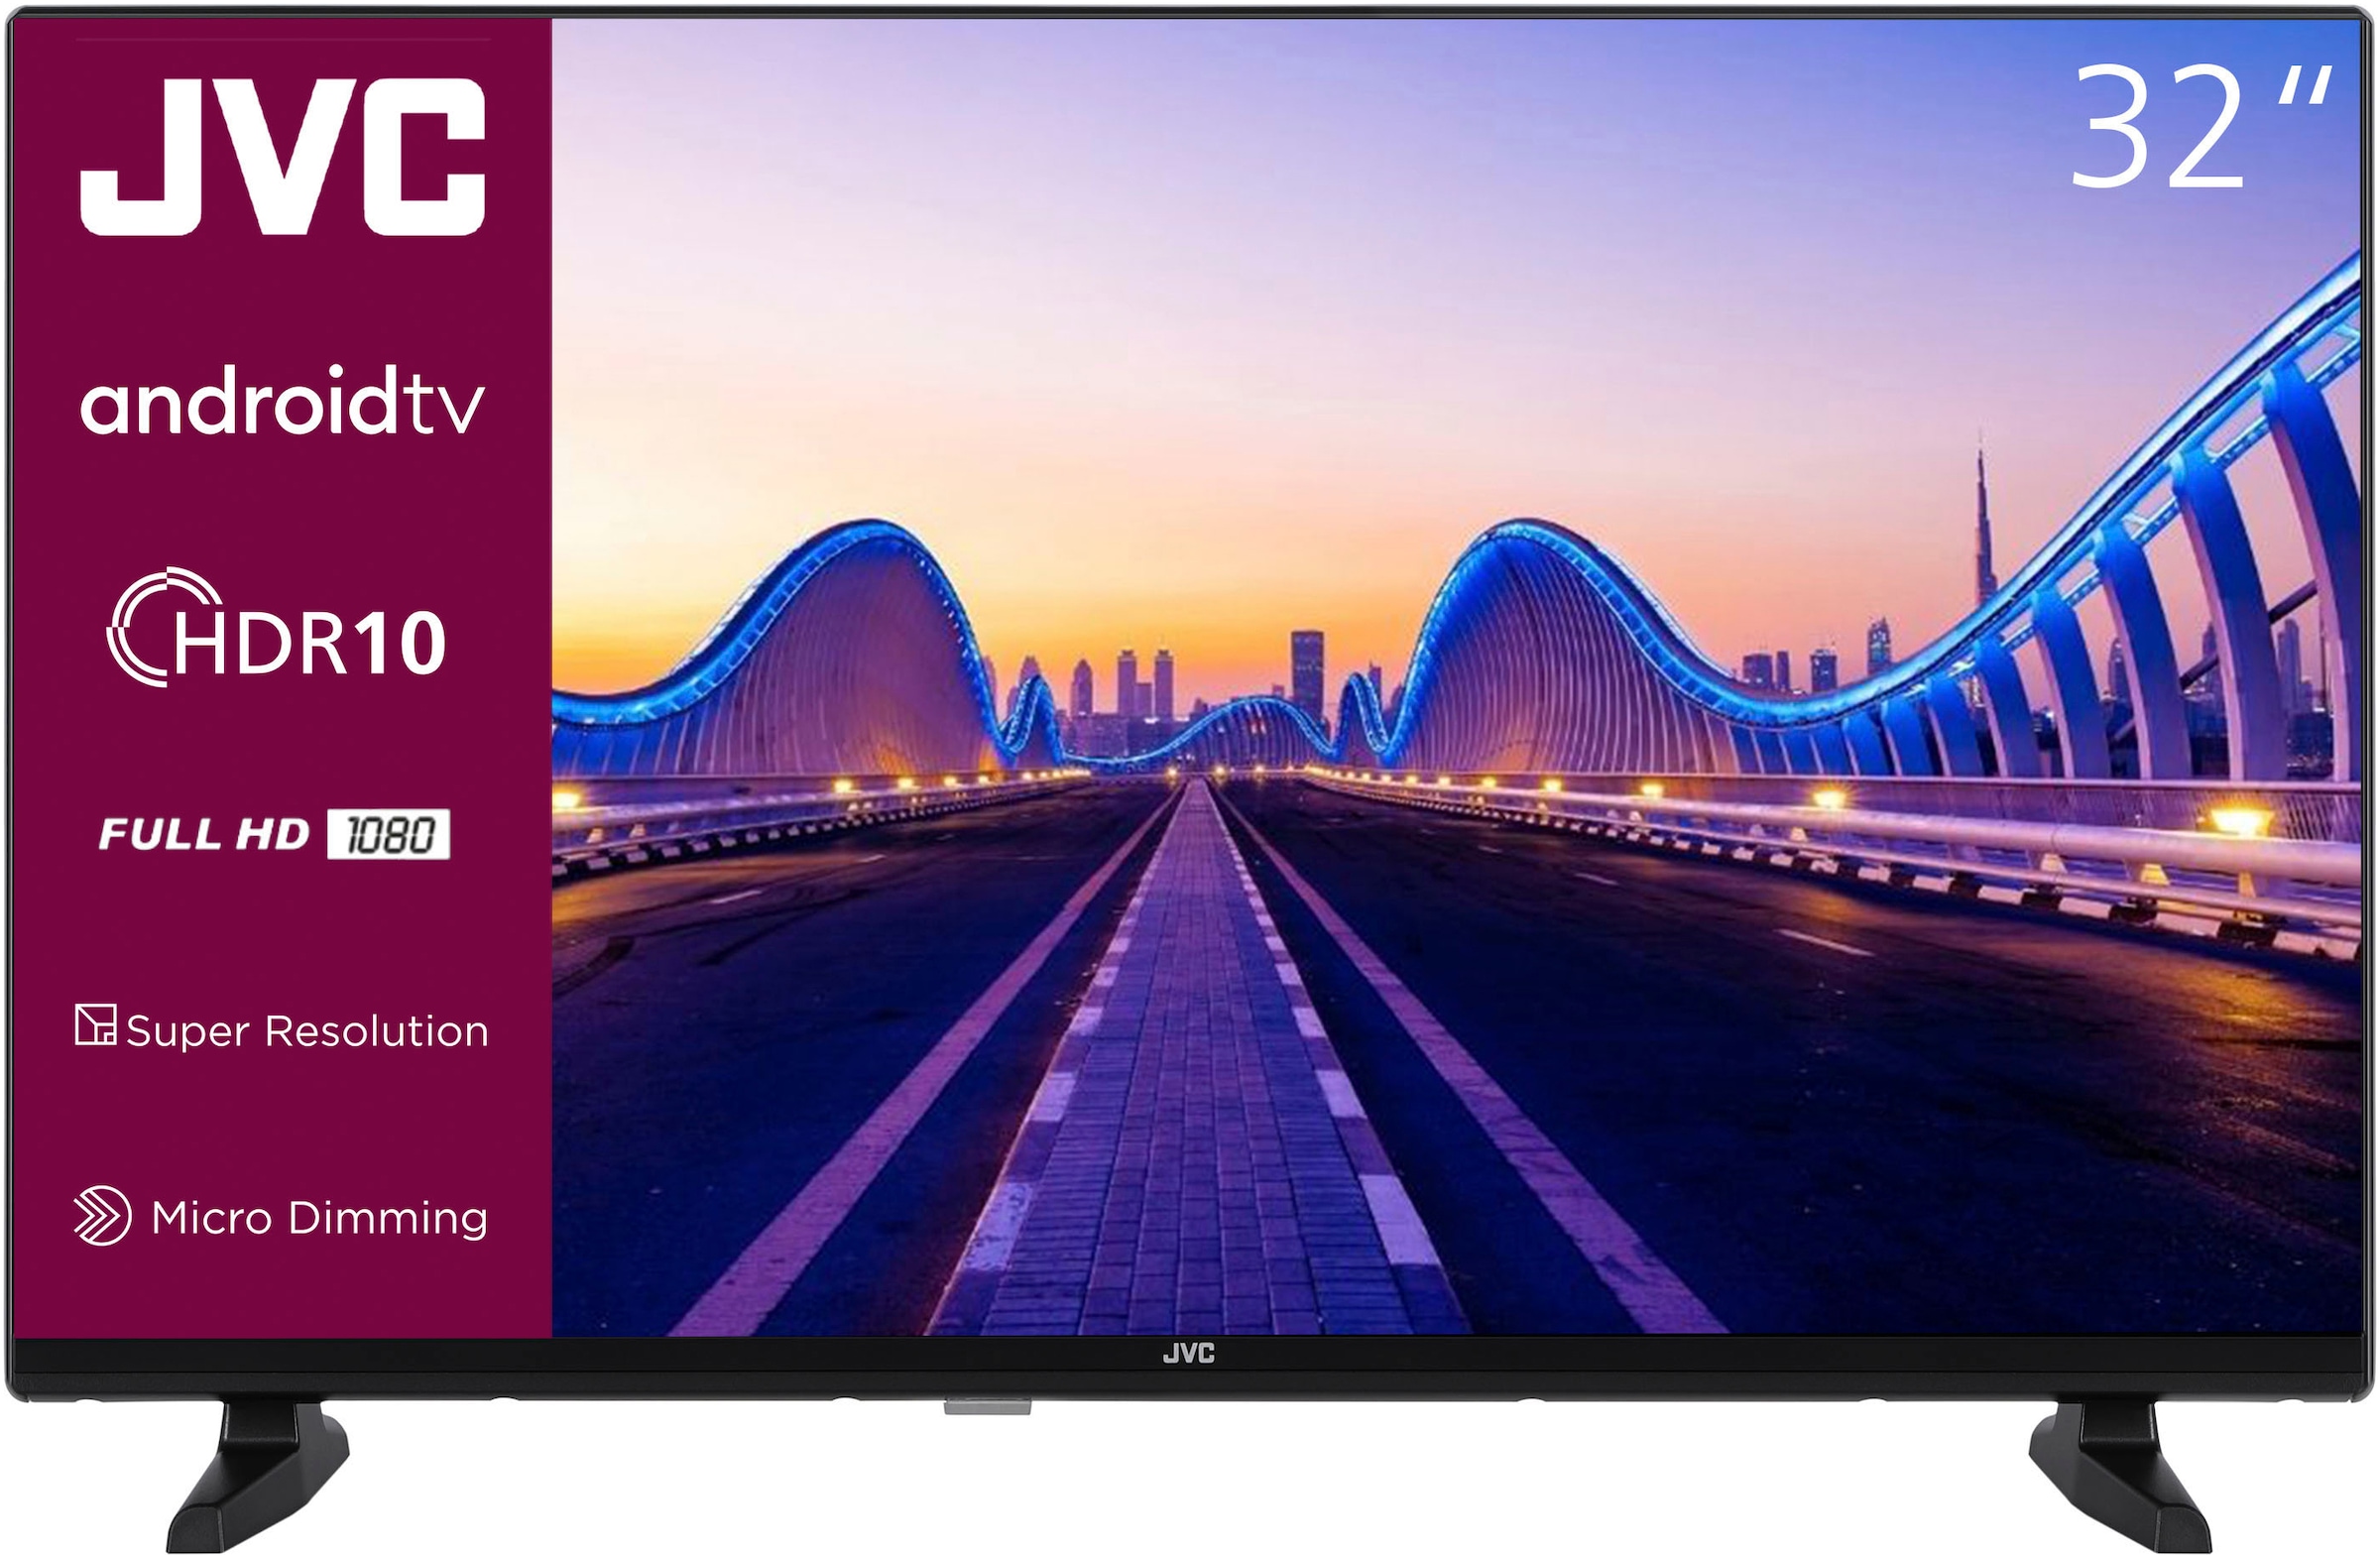 LCD-LED Fernseher »LT-32VAF3355«, 80 cm/32 Zoll, Full HD, Android TV-Smart-TV